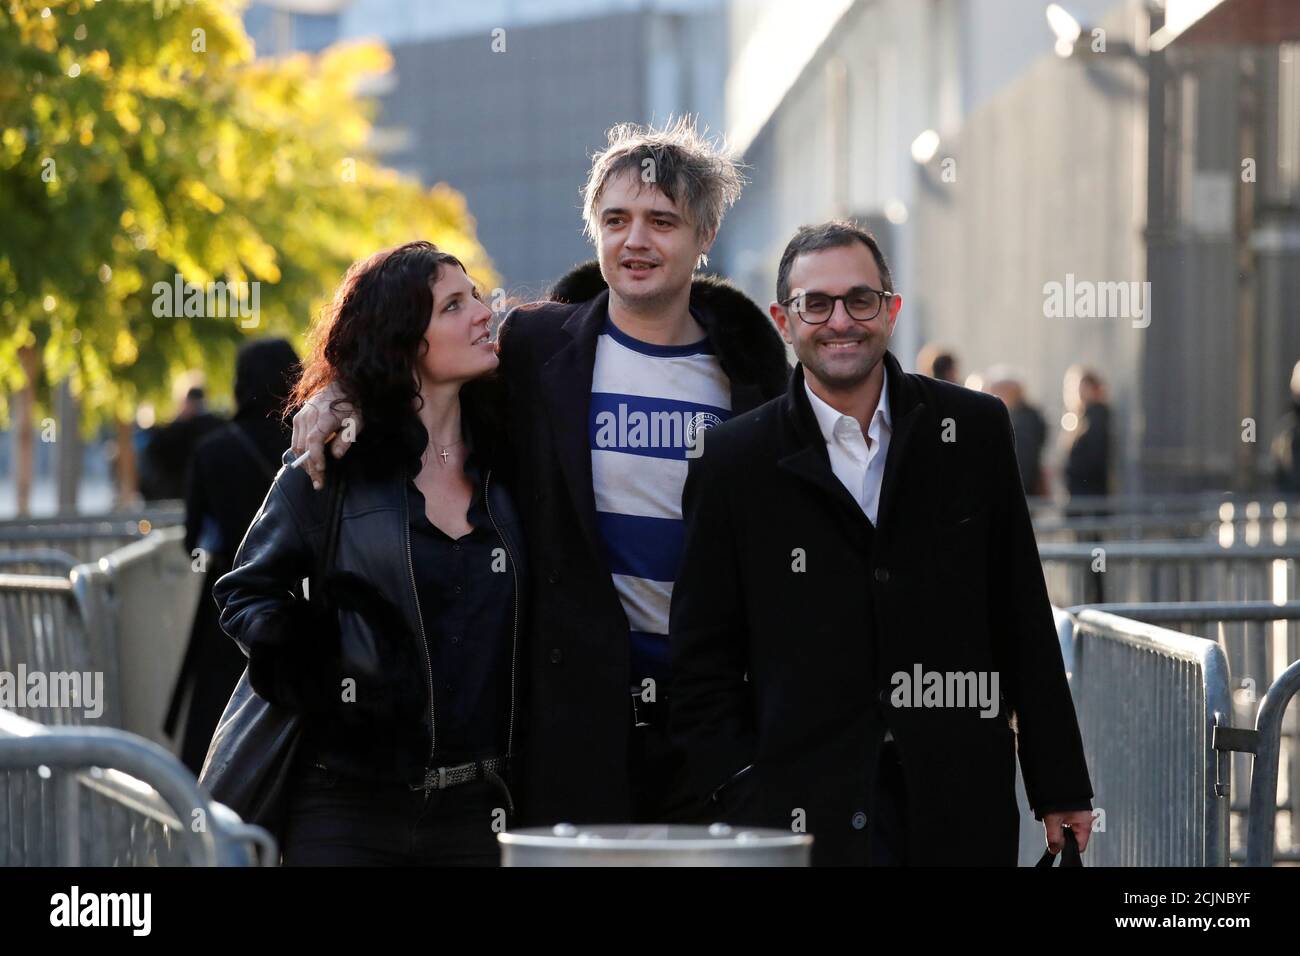 Le rocker indépendant britannique Pete Doherty quitte le tribunal de Paris  avec son ami Katia de Vidas et son avocat Arash Derambarsh à Paris, France,  le 12 novembre 2019. REUTERS/Benoit Tessier Photo